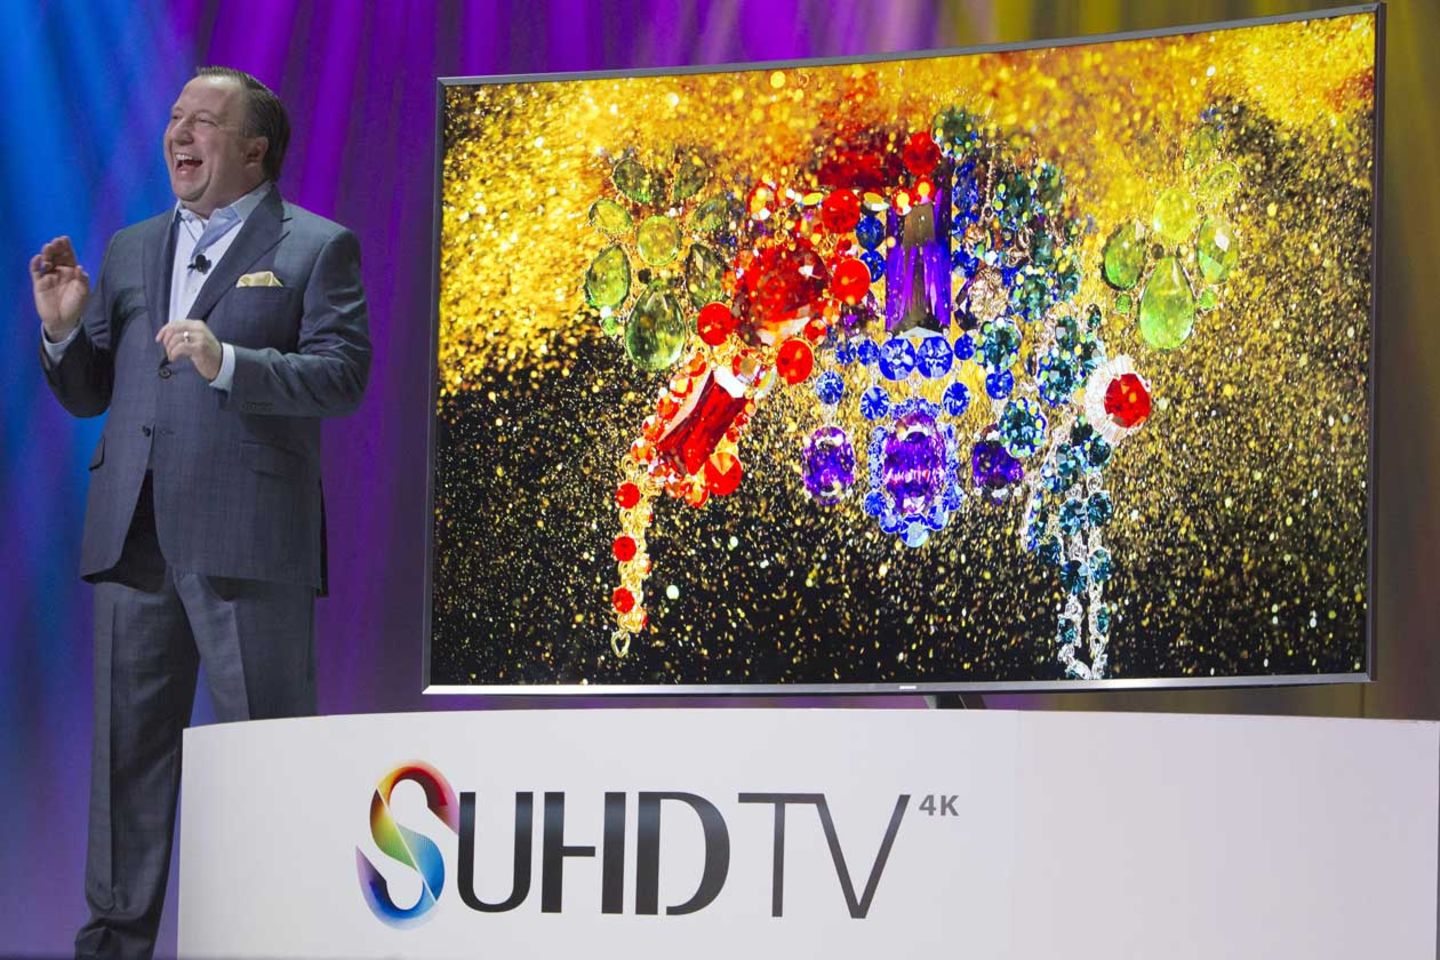 Die neuen Samsung-Fernseher lauschen im Wohnzimmer mit. Allerdings kann die Sprachsteuerung auch direkt deaktiviert werden.